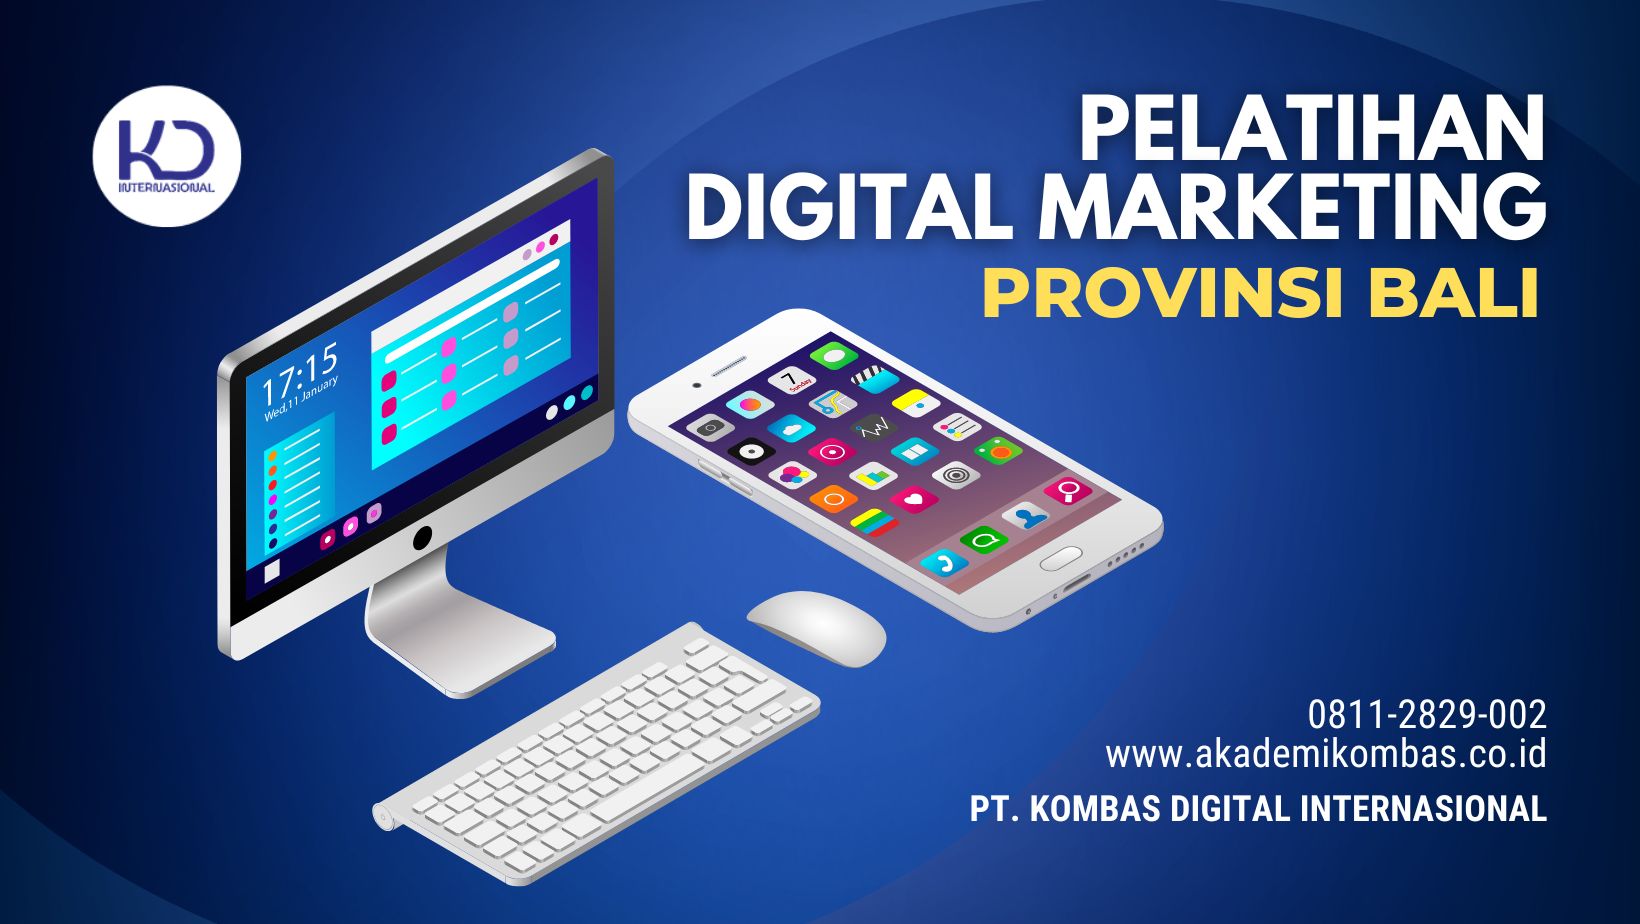 Pelatihan Digital Marketing Bali